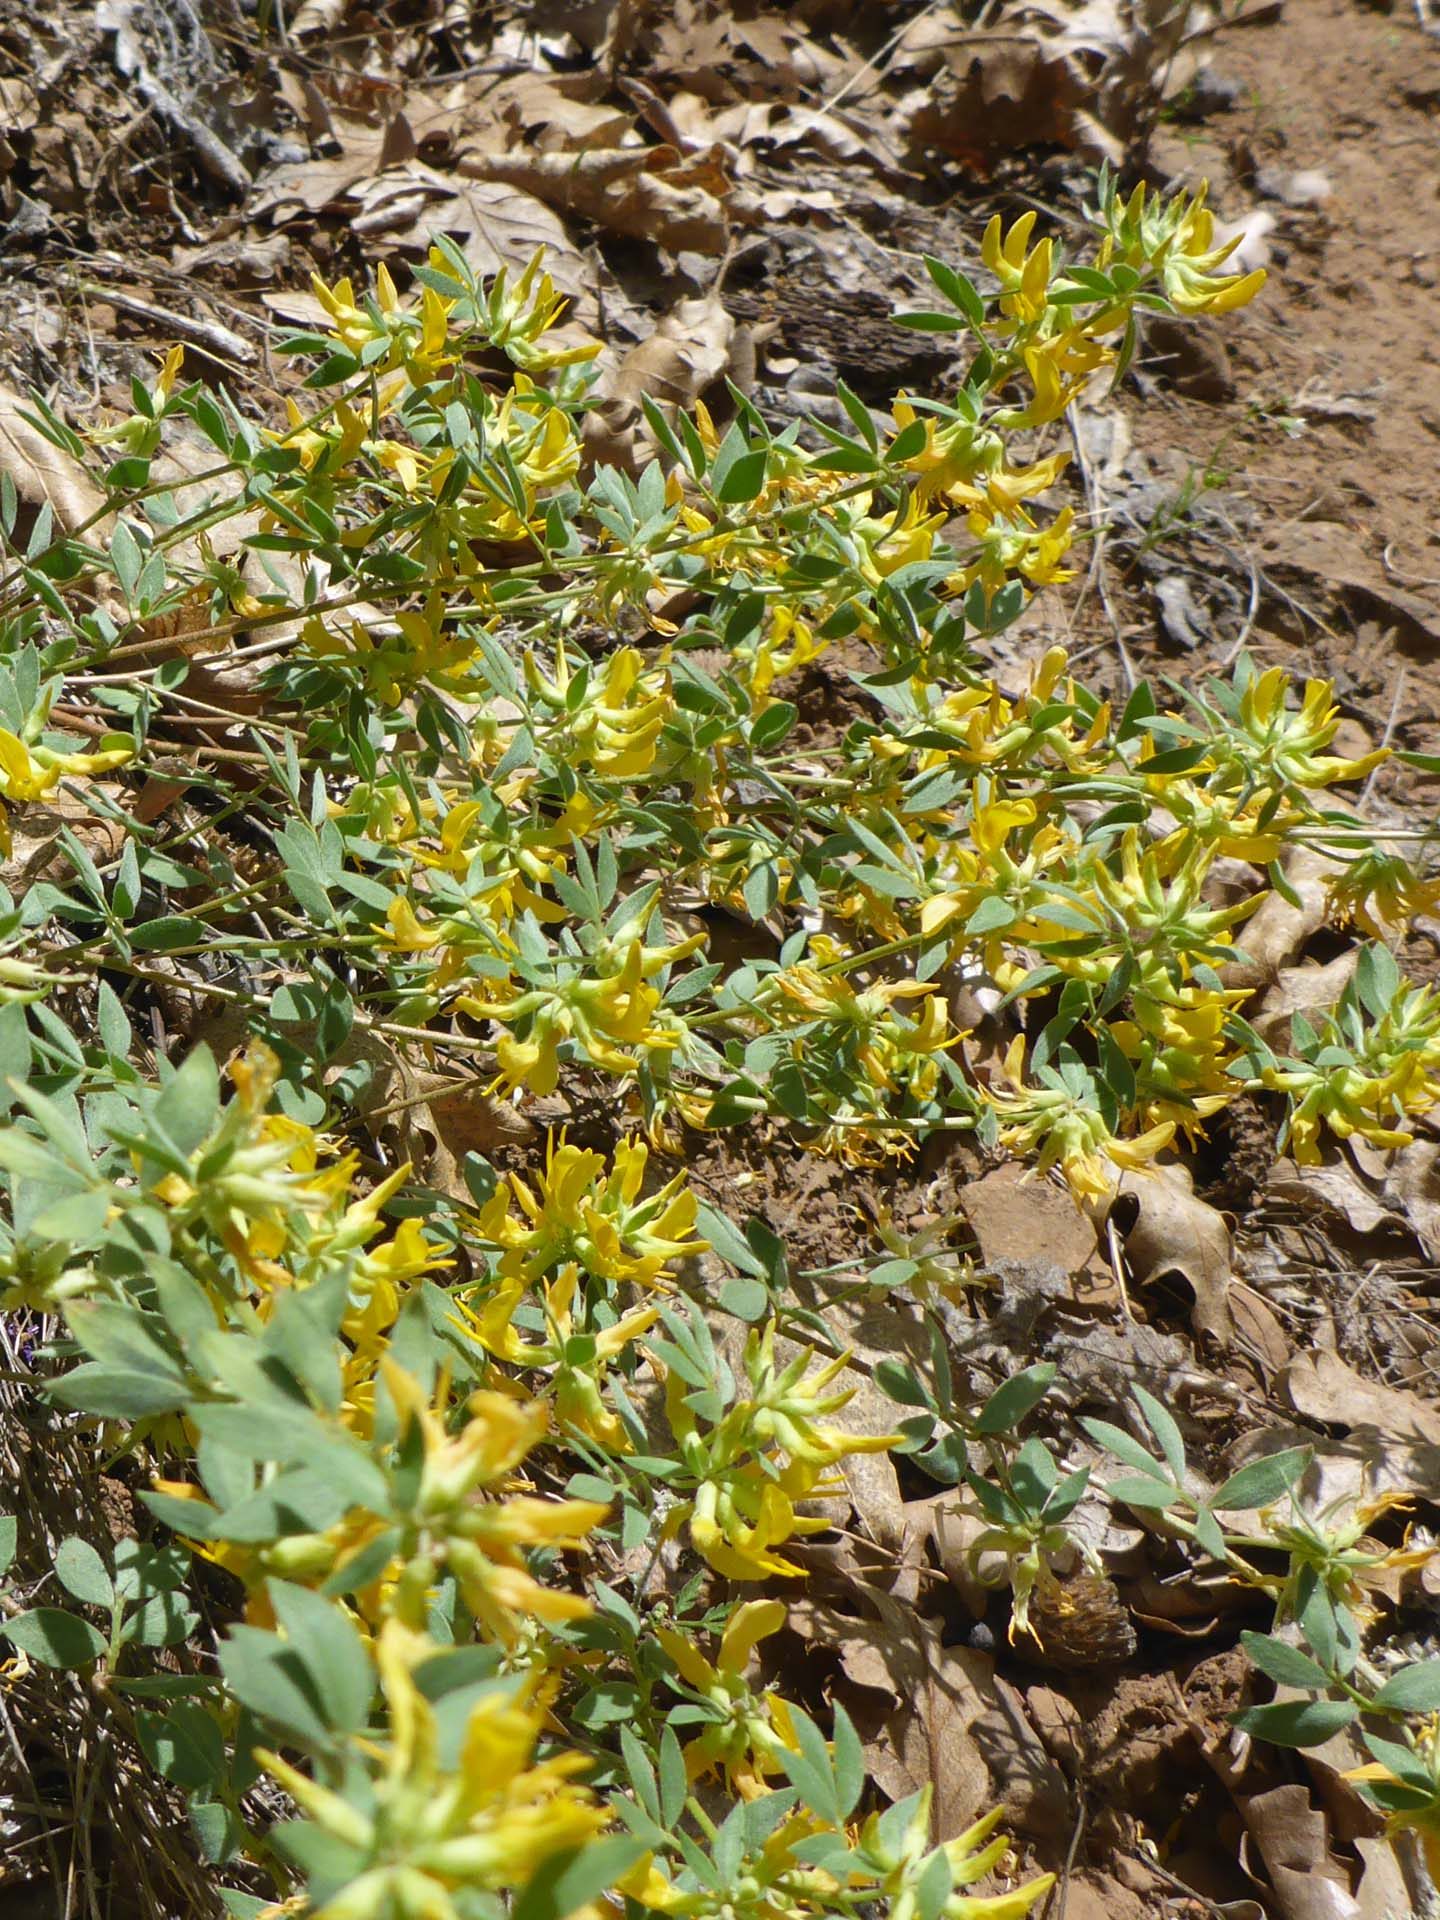 Sierra Nevada lotus. D. Burk.